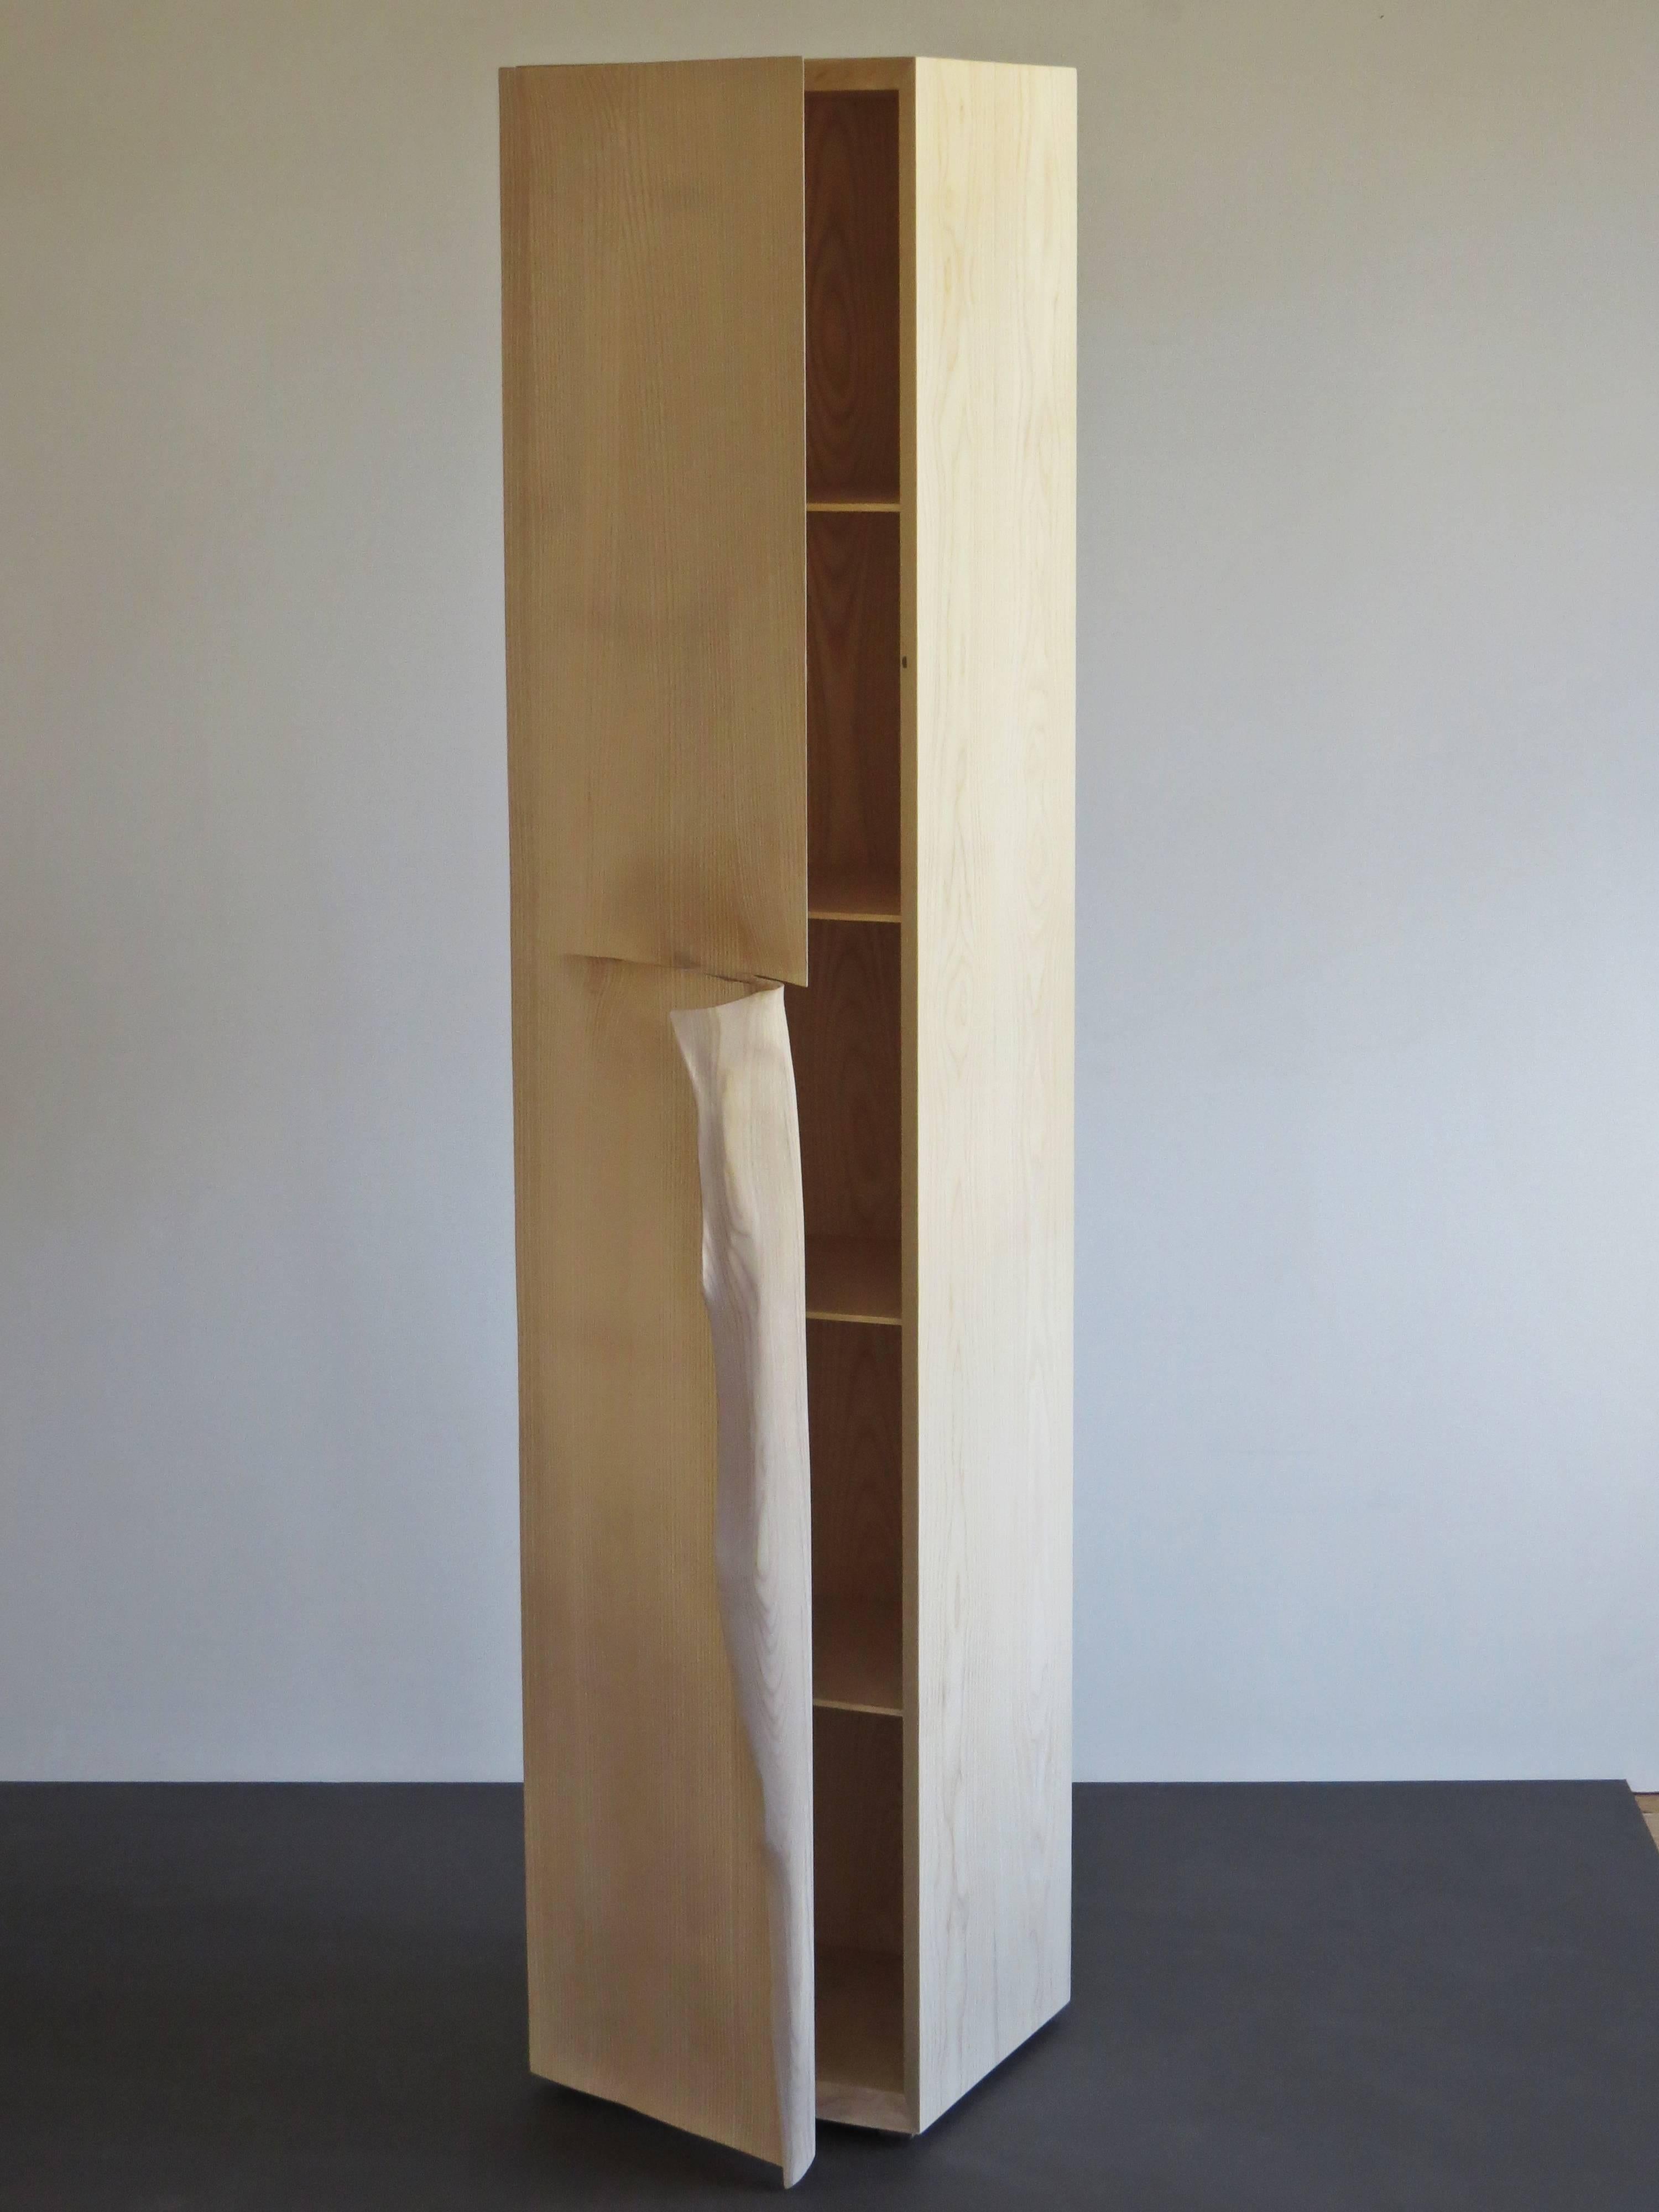 Hochschrank handgefertigt aus massivem Eschenholz.
Entworfen von dem deutschen Möbelhersteller und Bildhauer Eckehard Weimann.
Ein klassischer geradliniger Körper wird durch einen Griff wie ein Eselsohr durchbrochen.
Geformt sieht dieser Griff